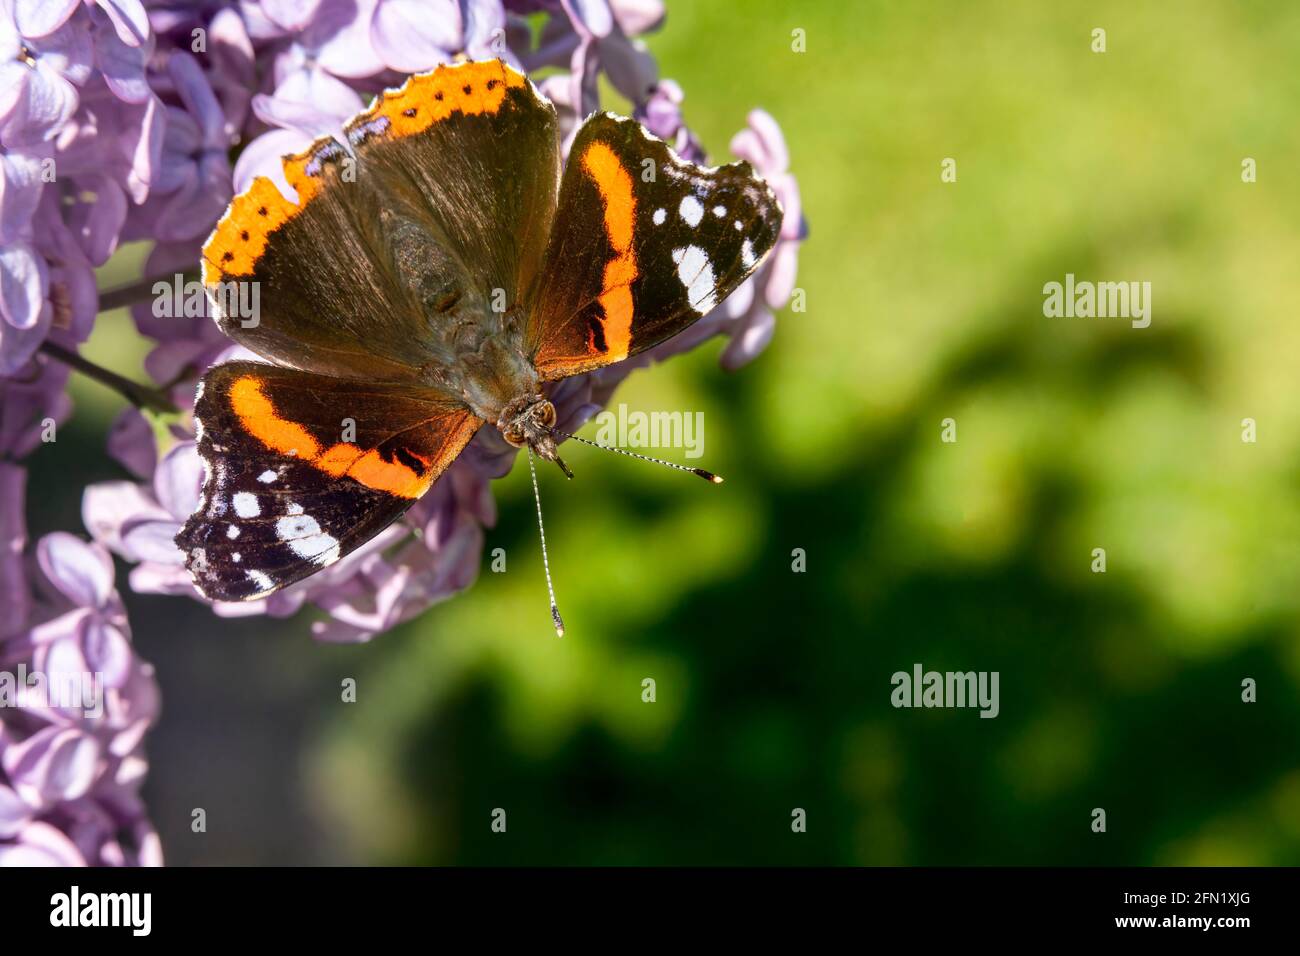 Roter Admiral-Schmetterling (Vanessa atalanta) ruht auf einer lila Flieder Strauch Blume während der Sommersaison, ein Makro Nahaufnahme Stock Foto Bild wit Stockfoto